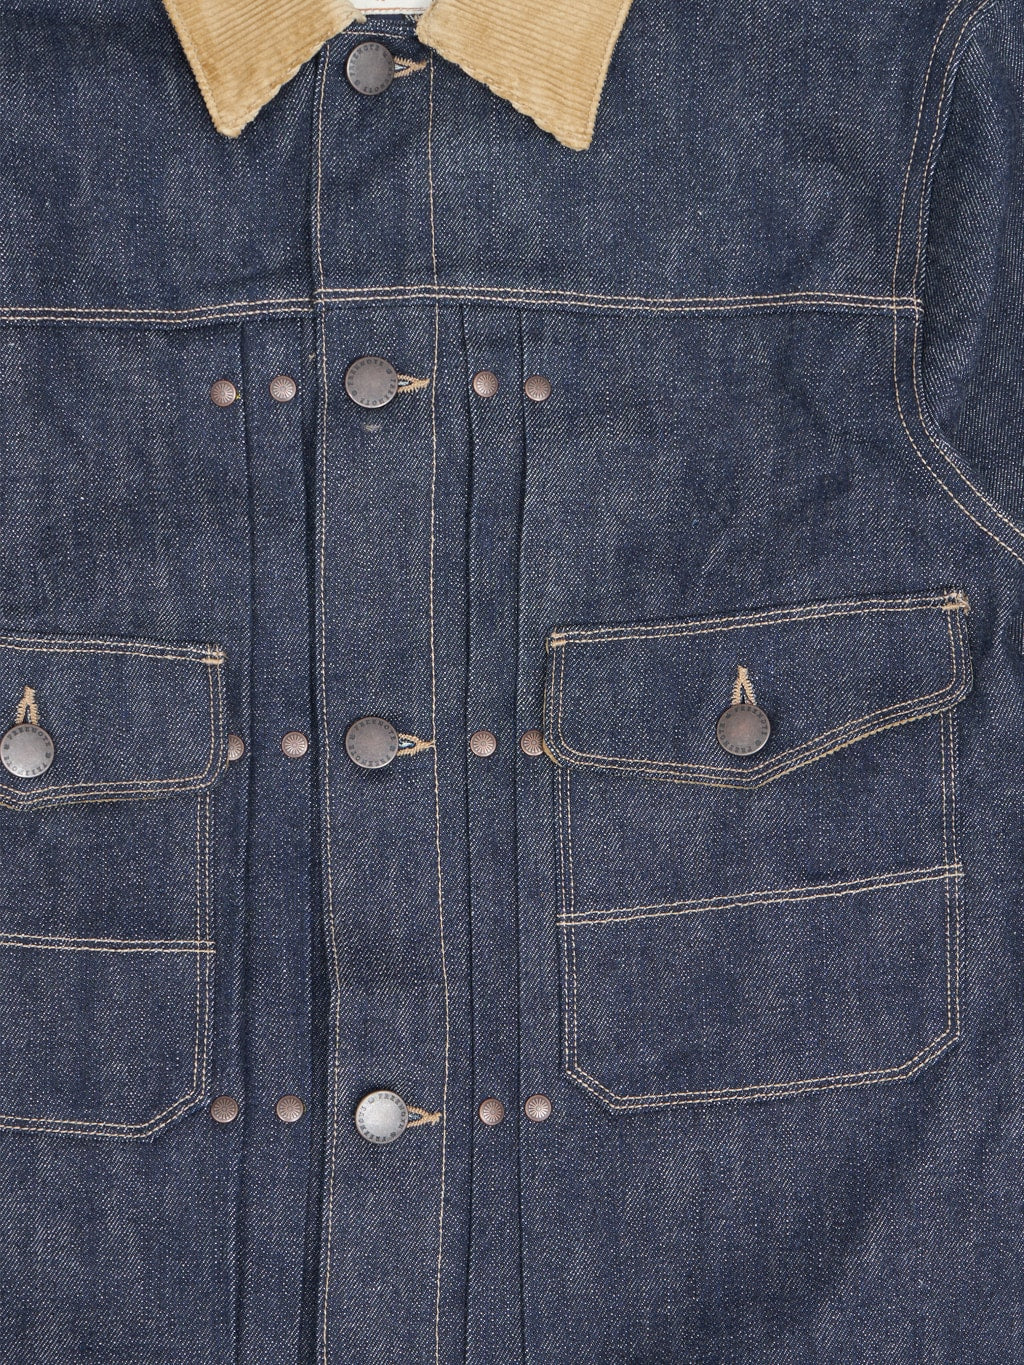 freenote cloth rj 313 ounce indigo selvedge denim jacket  chest closeup